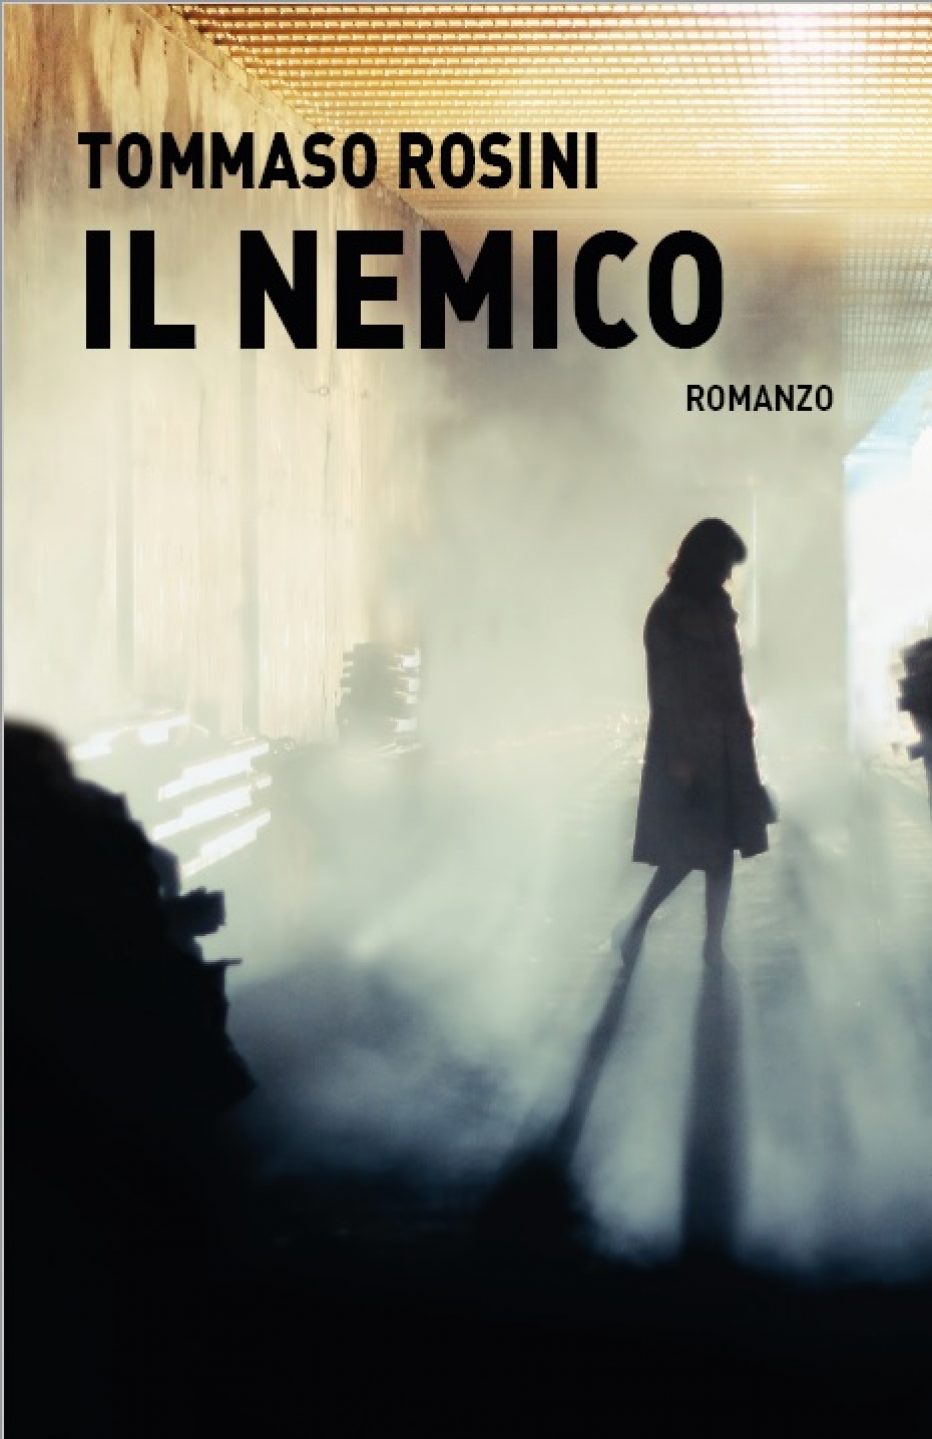 Il nemico, nuovo romanzo di Tommaso Rosini